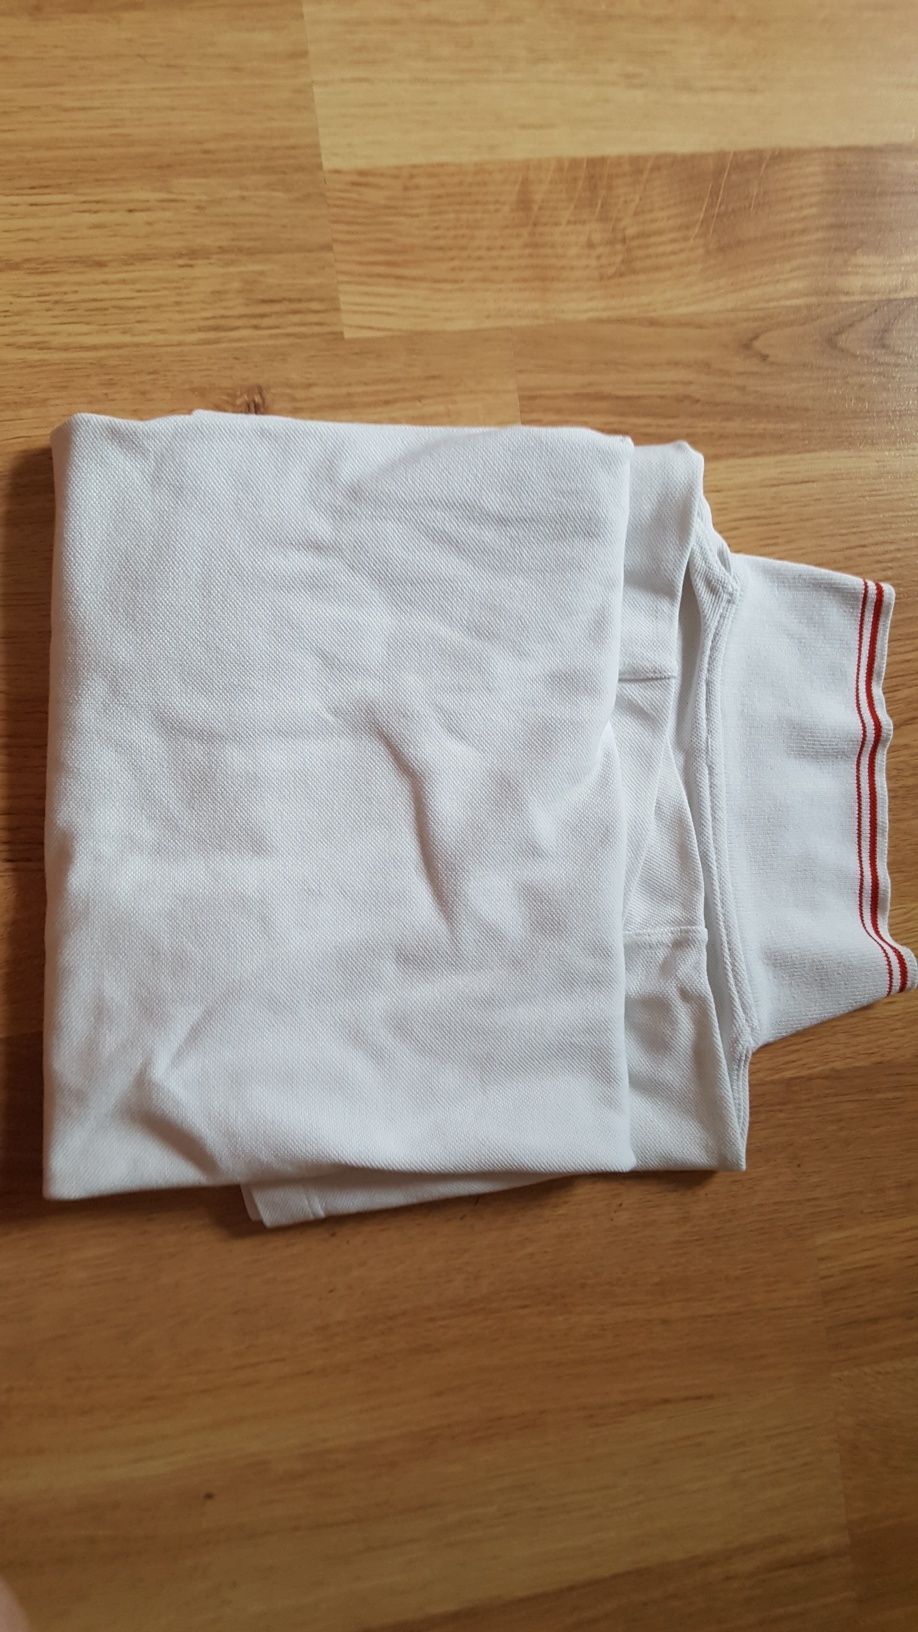 Biala koszulka polo z logo rozmiar L bawelna